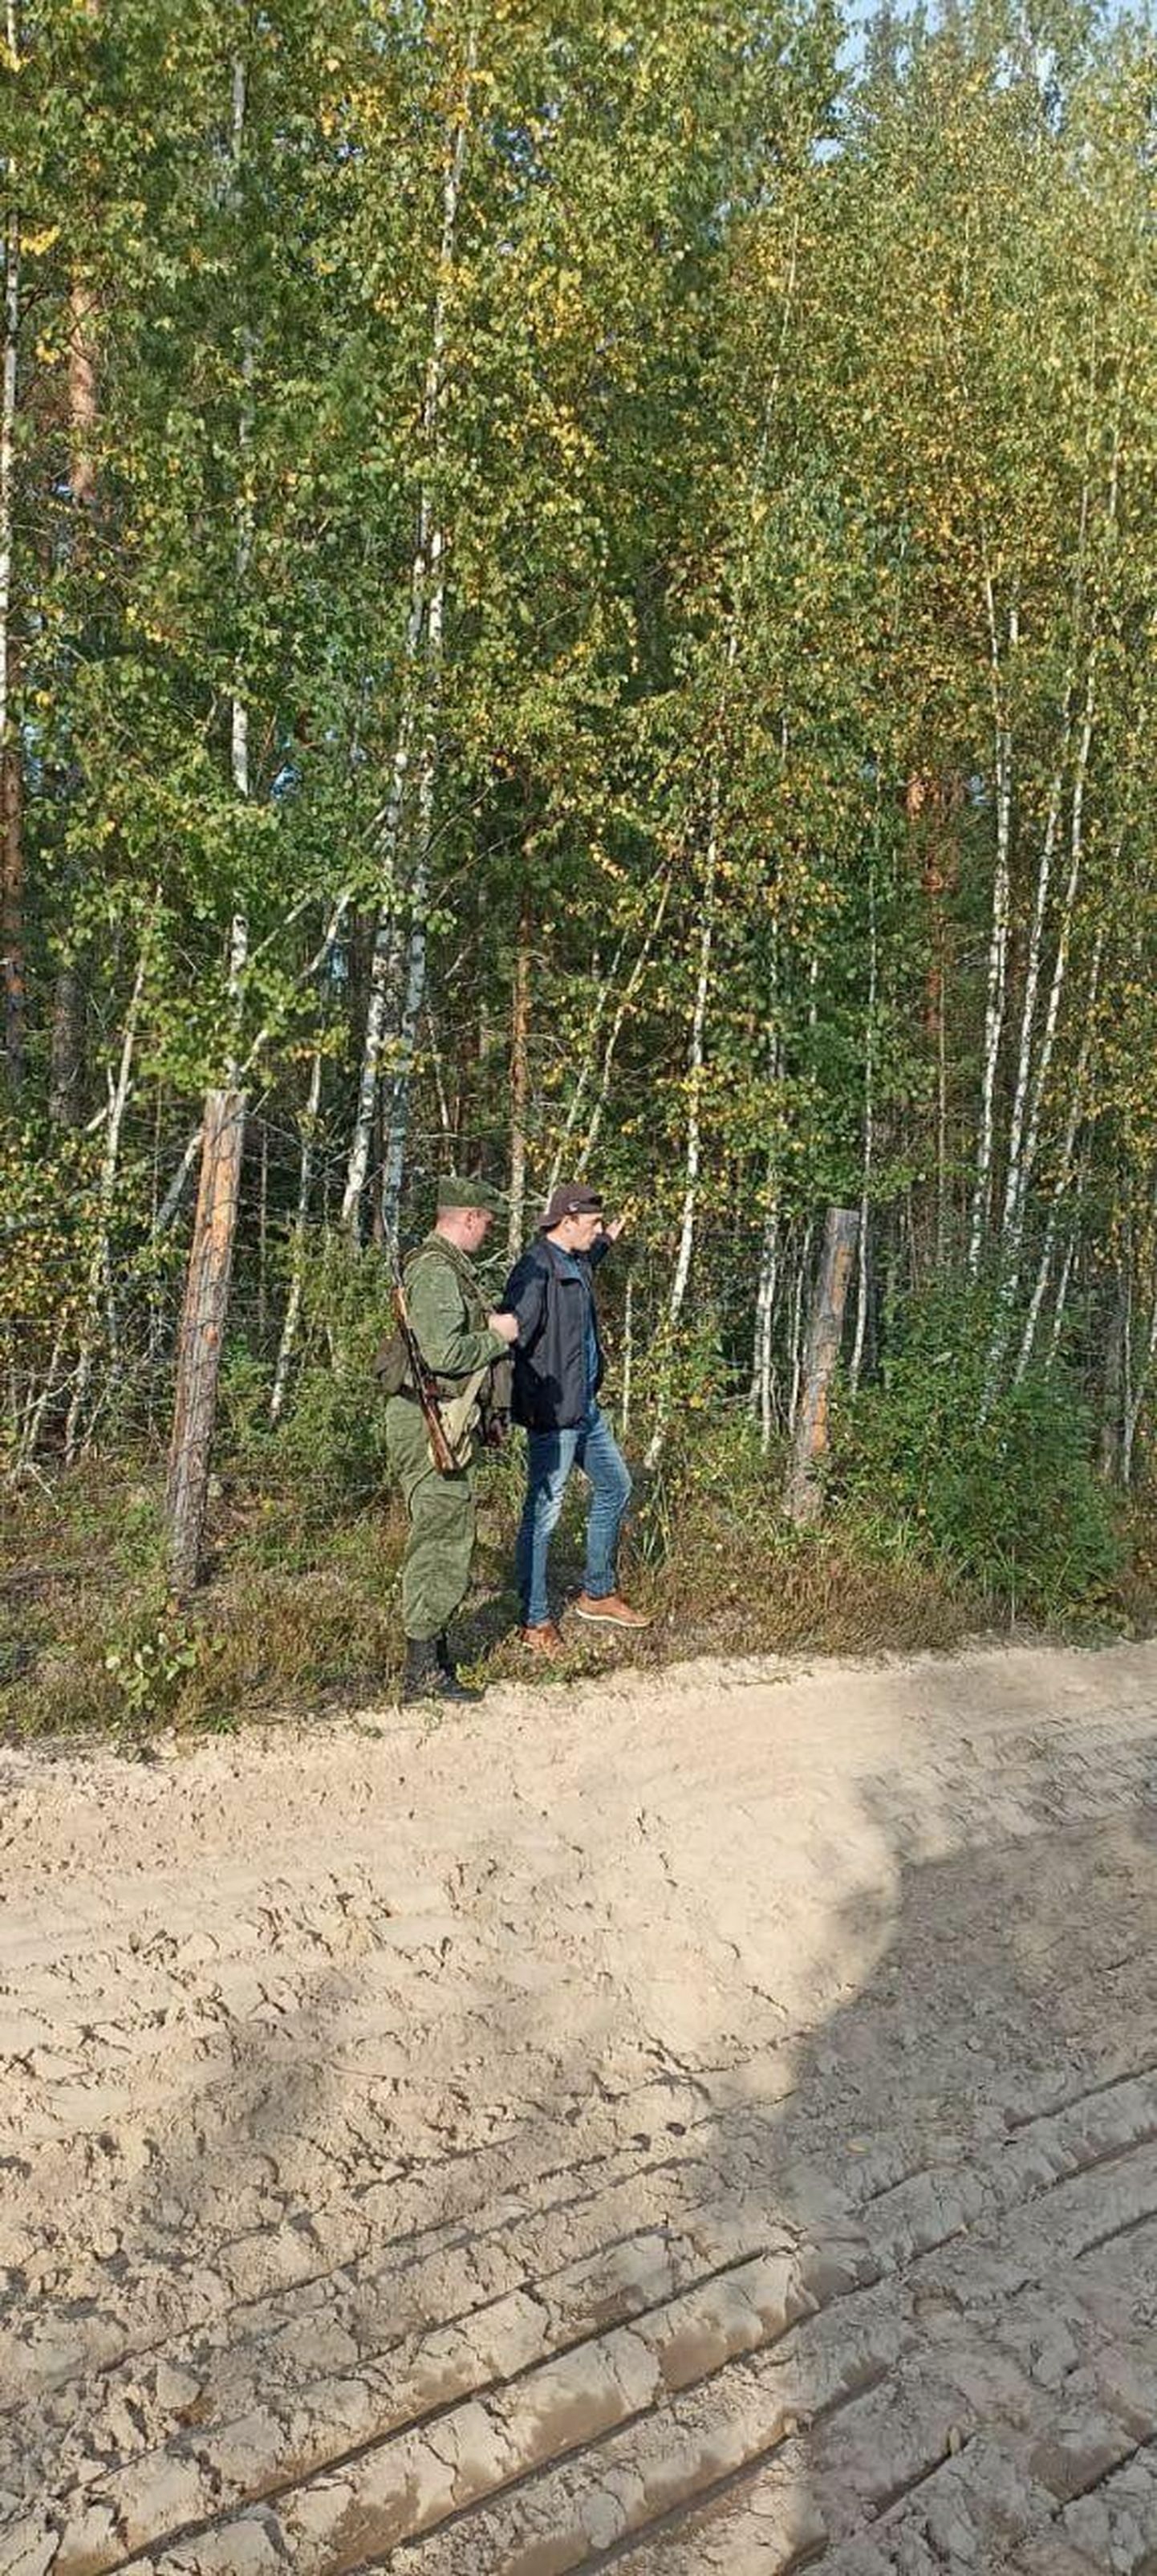 Tõenäoliselt septembris Venemaal kinni peetud Eesti kodanik Vene piirivalvuriga. Foto ja teate juhtunu kohta avaldas FSB 4. oktoobril.